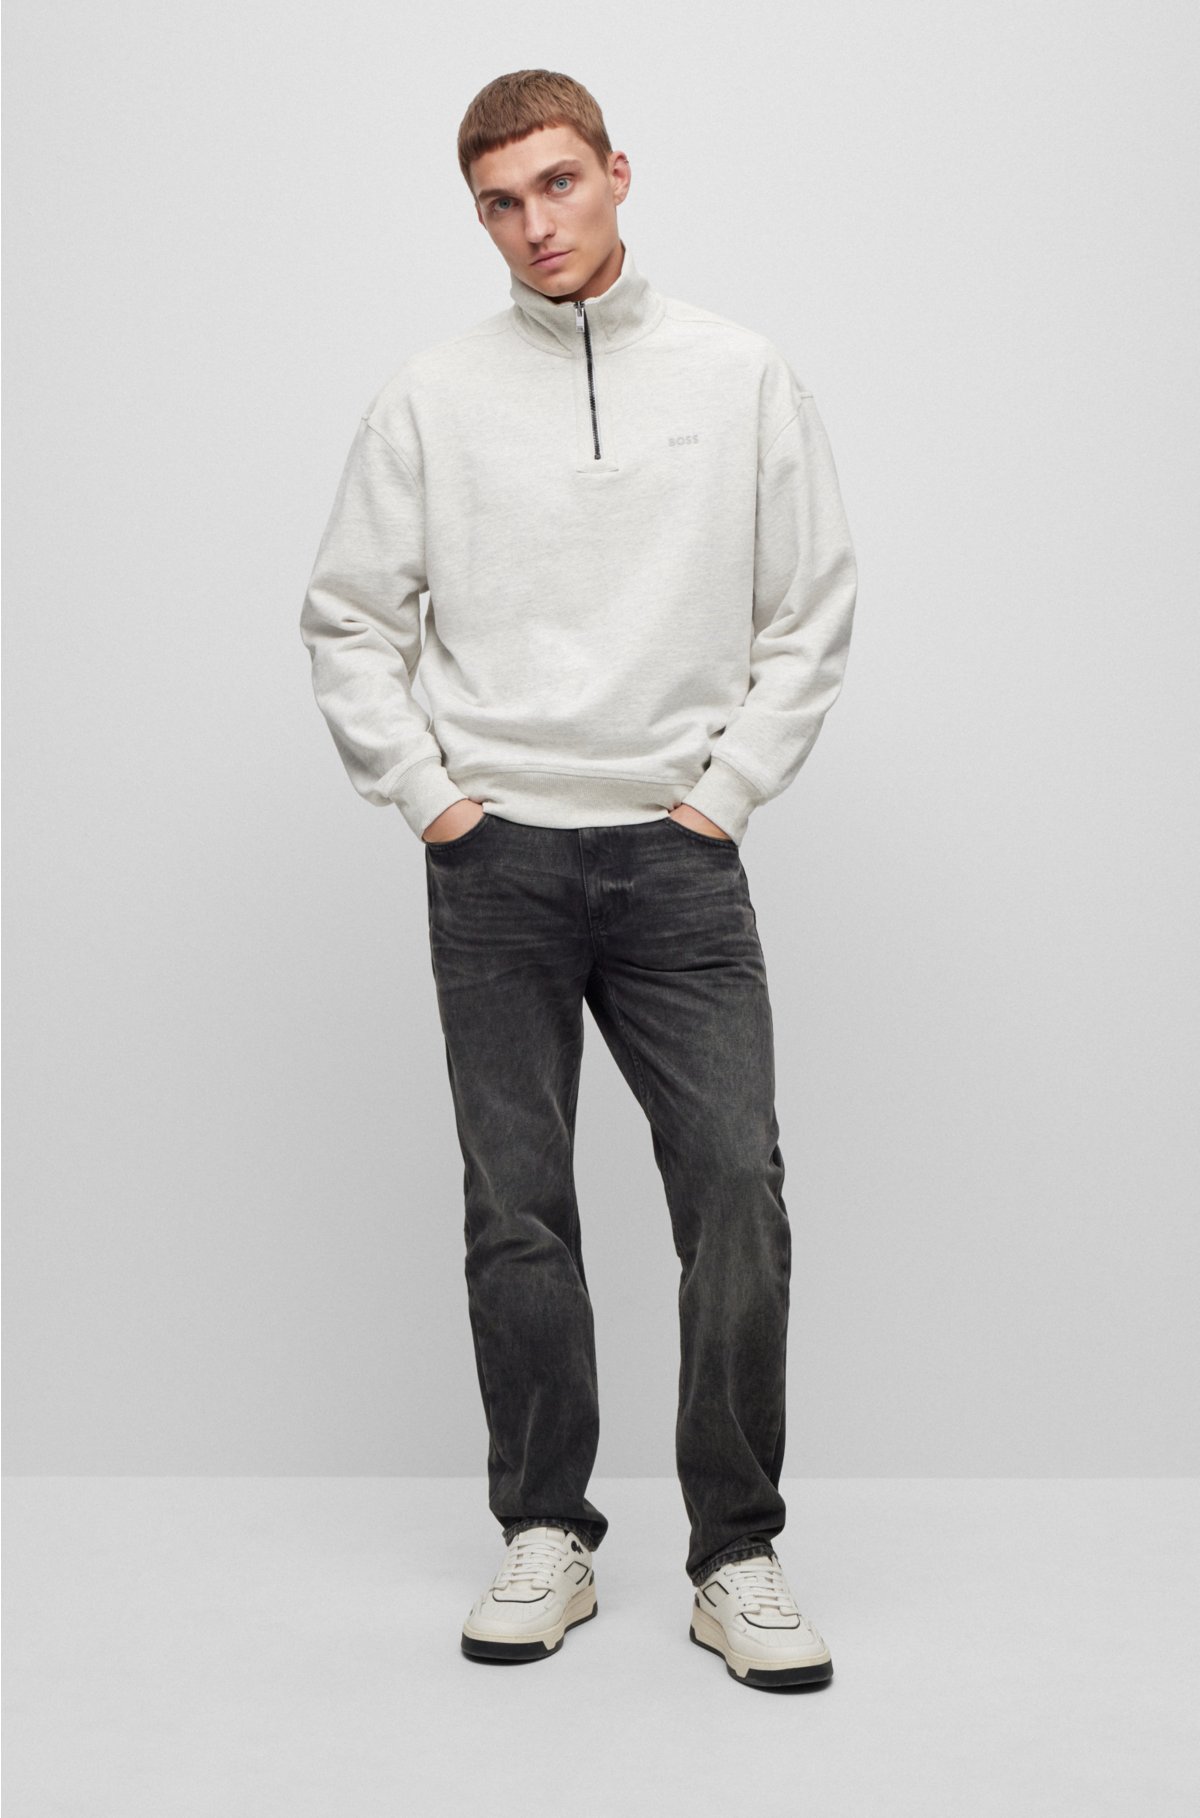 BOSS - Zip-neck sweatshirt in melange slub cotton with logo